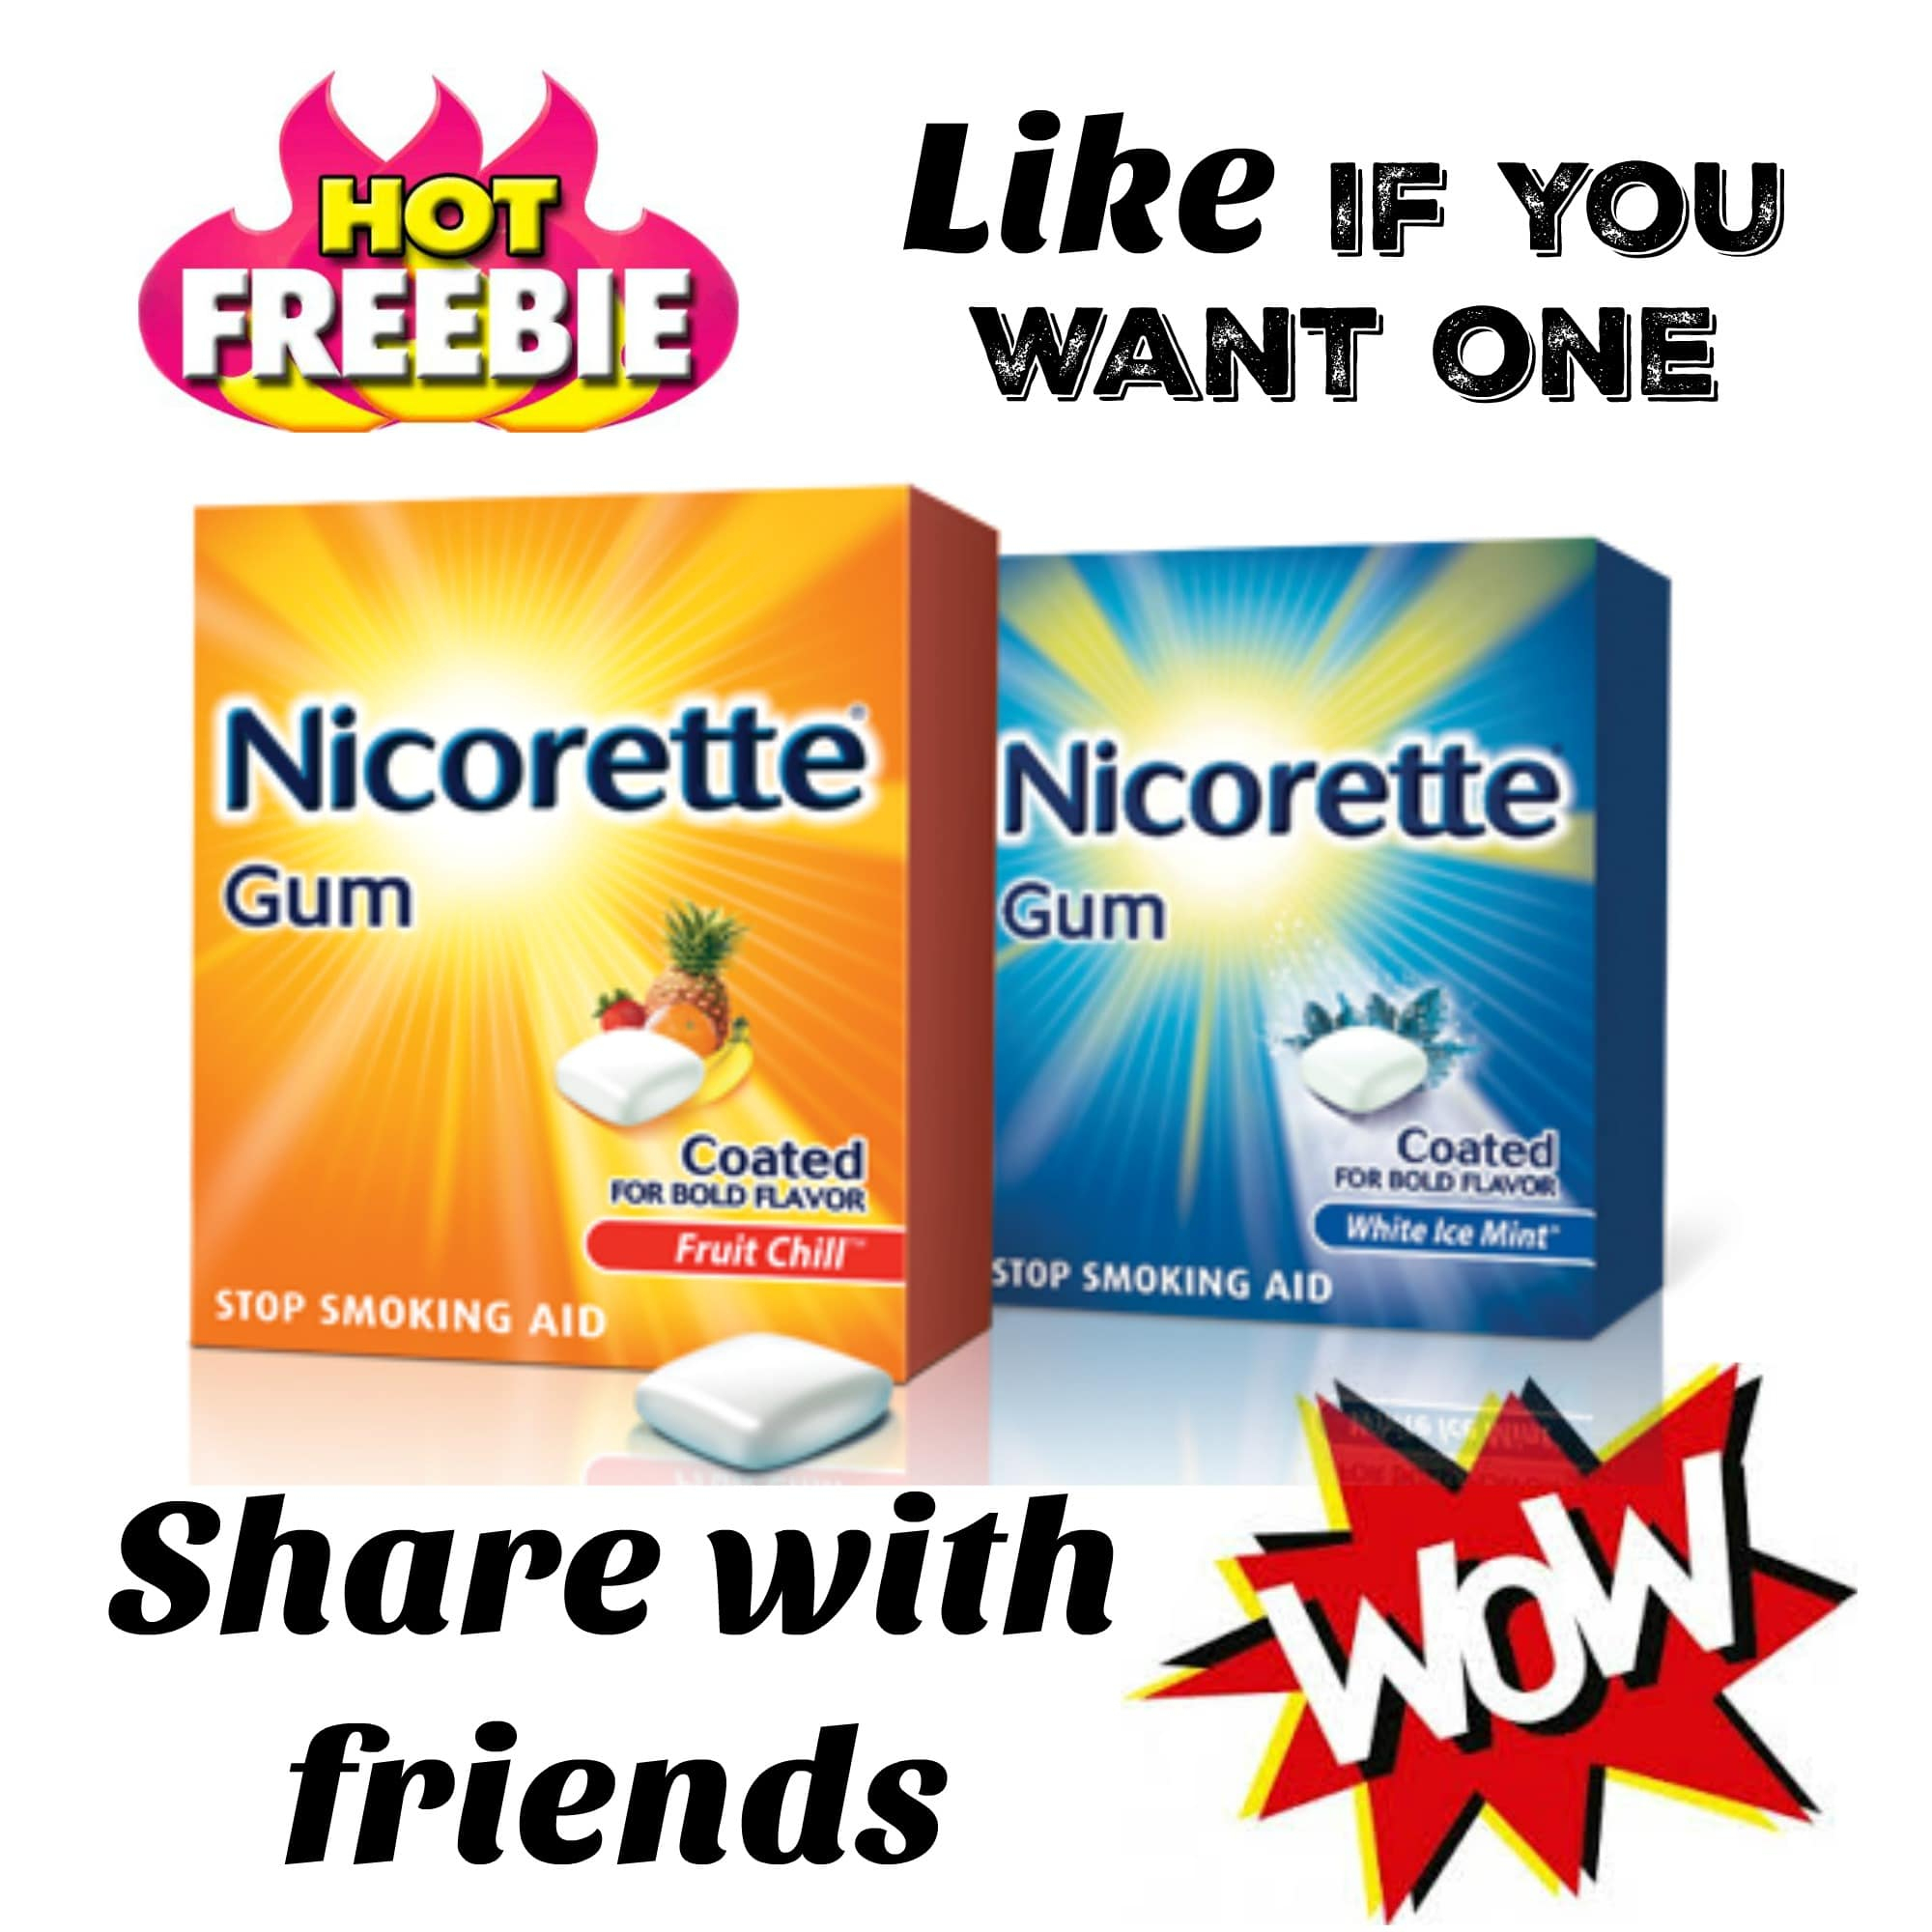 free-printable-nicotine-patch-coupons-free-printable